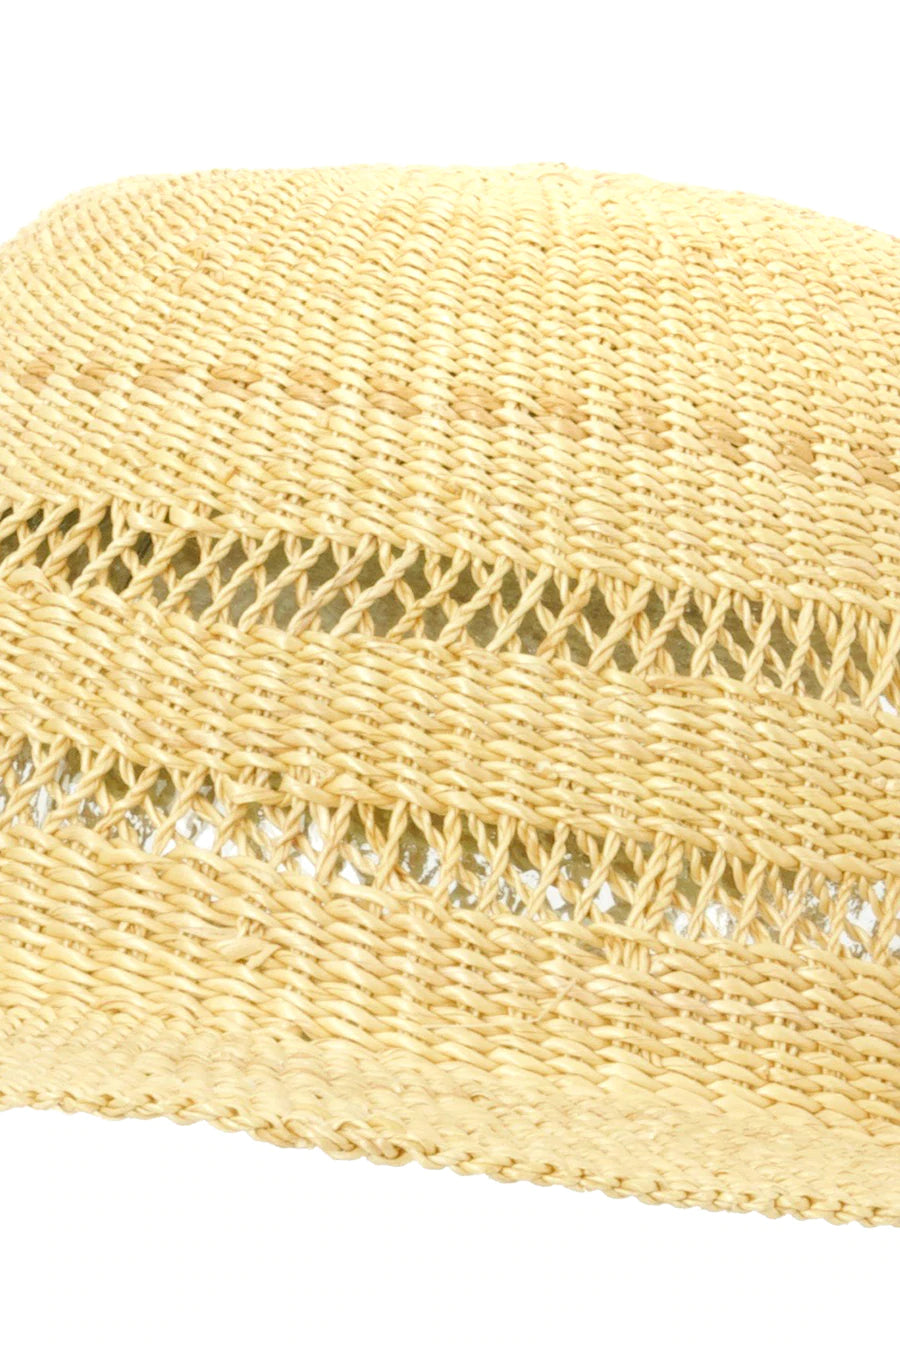 Short Brimmed Lace Weave Sun Hat